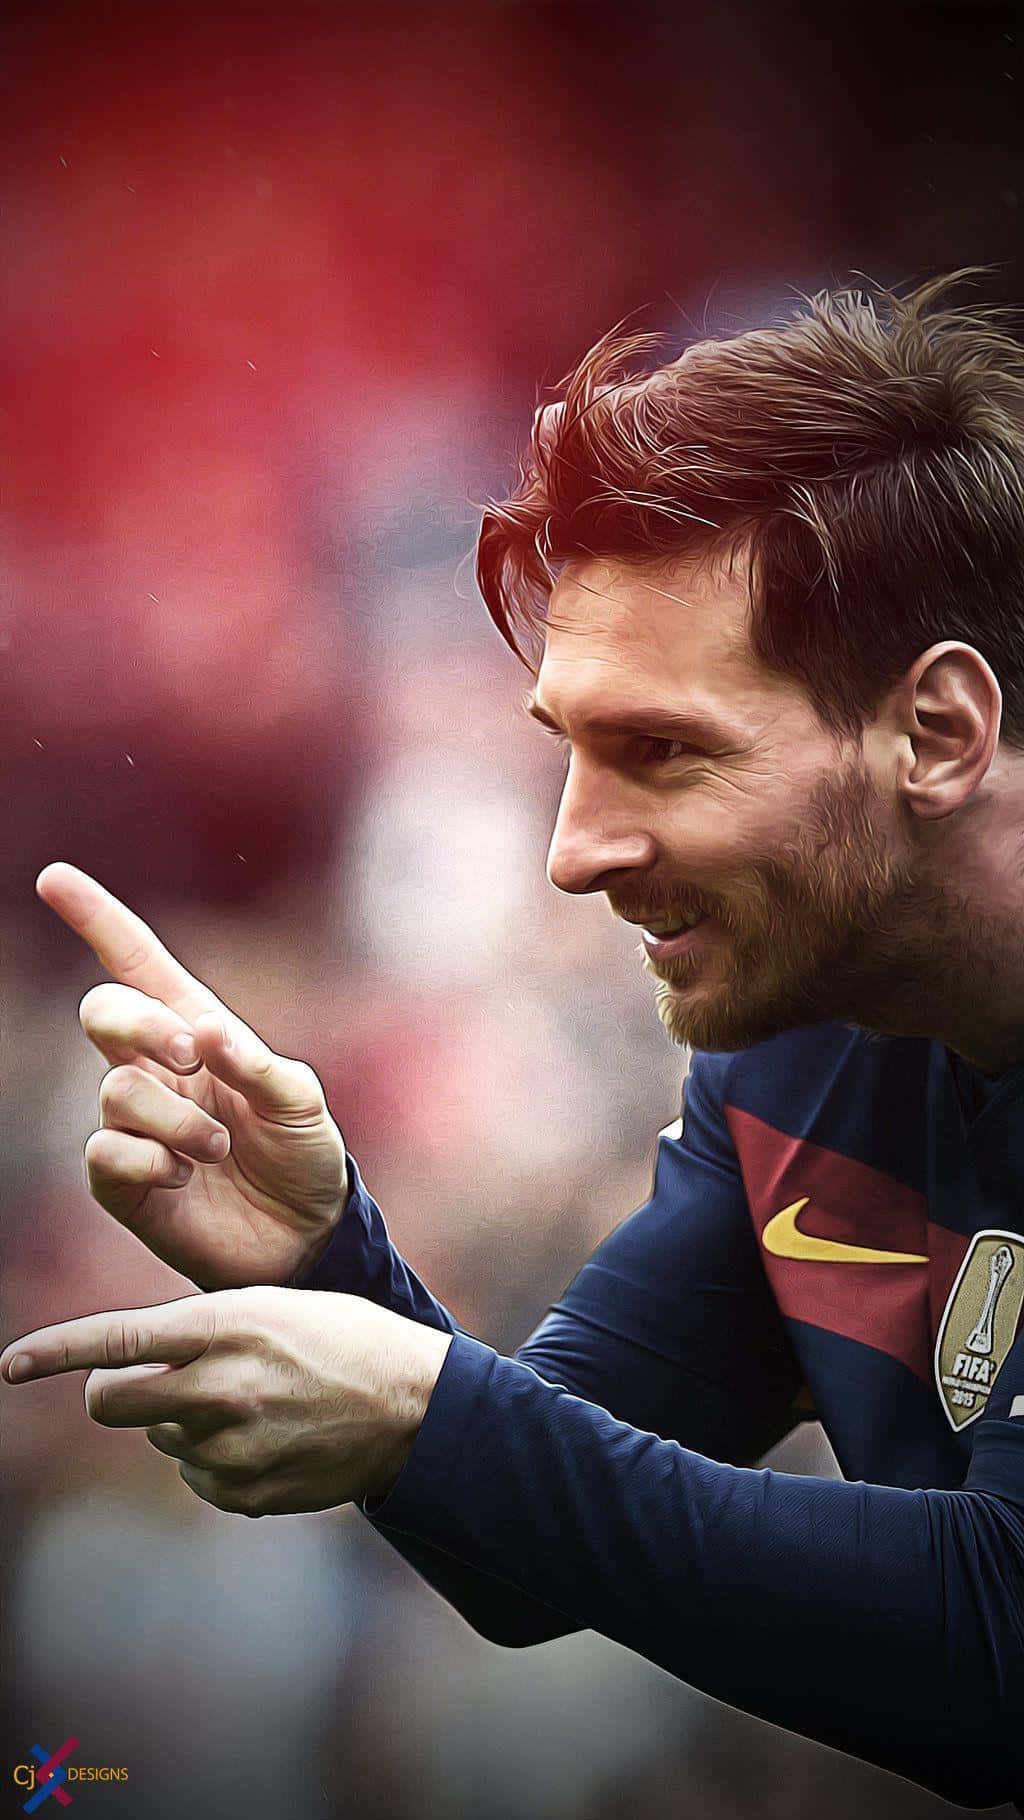 Hình nền điện thoại của Messi đang chờ đón bạn đó! Các tấm hình chất lượng cao với chân dung của ngôi sao bóng đá huyền thoại nhất sẽ làm bạn trở nên dễ chịu hơn trong thời gian dài.